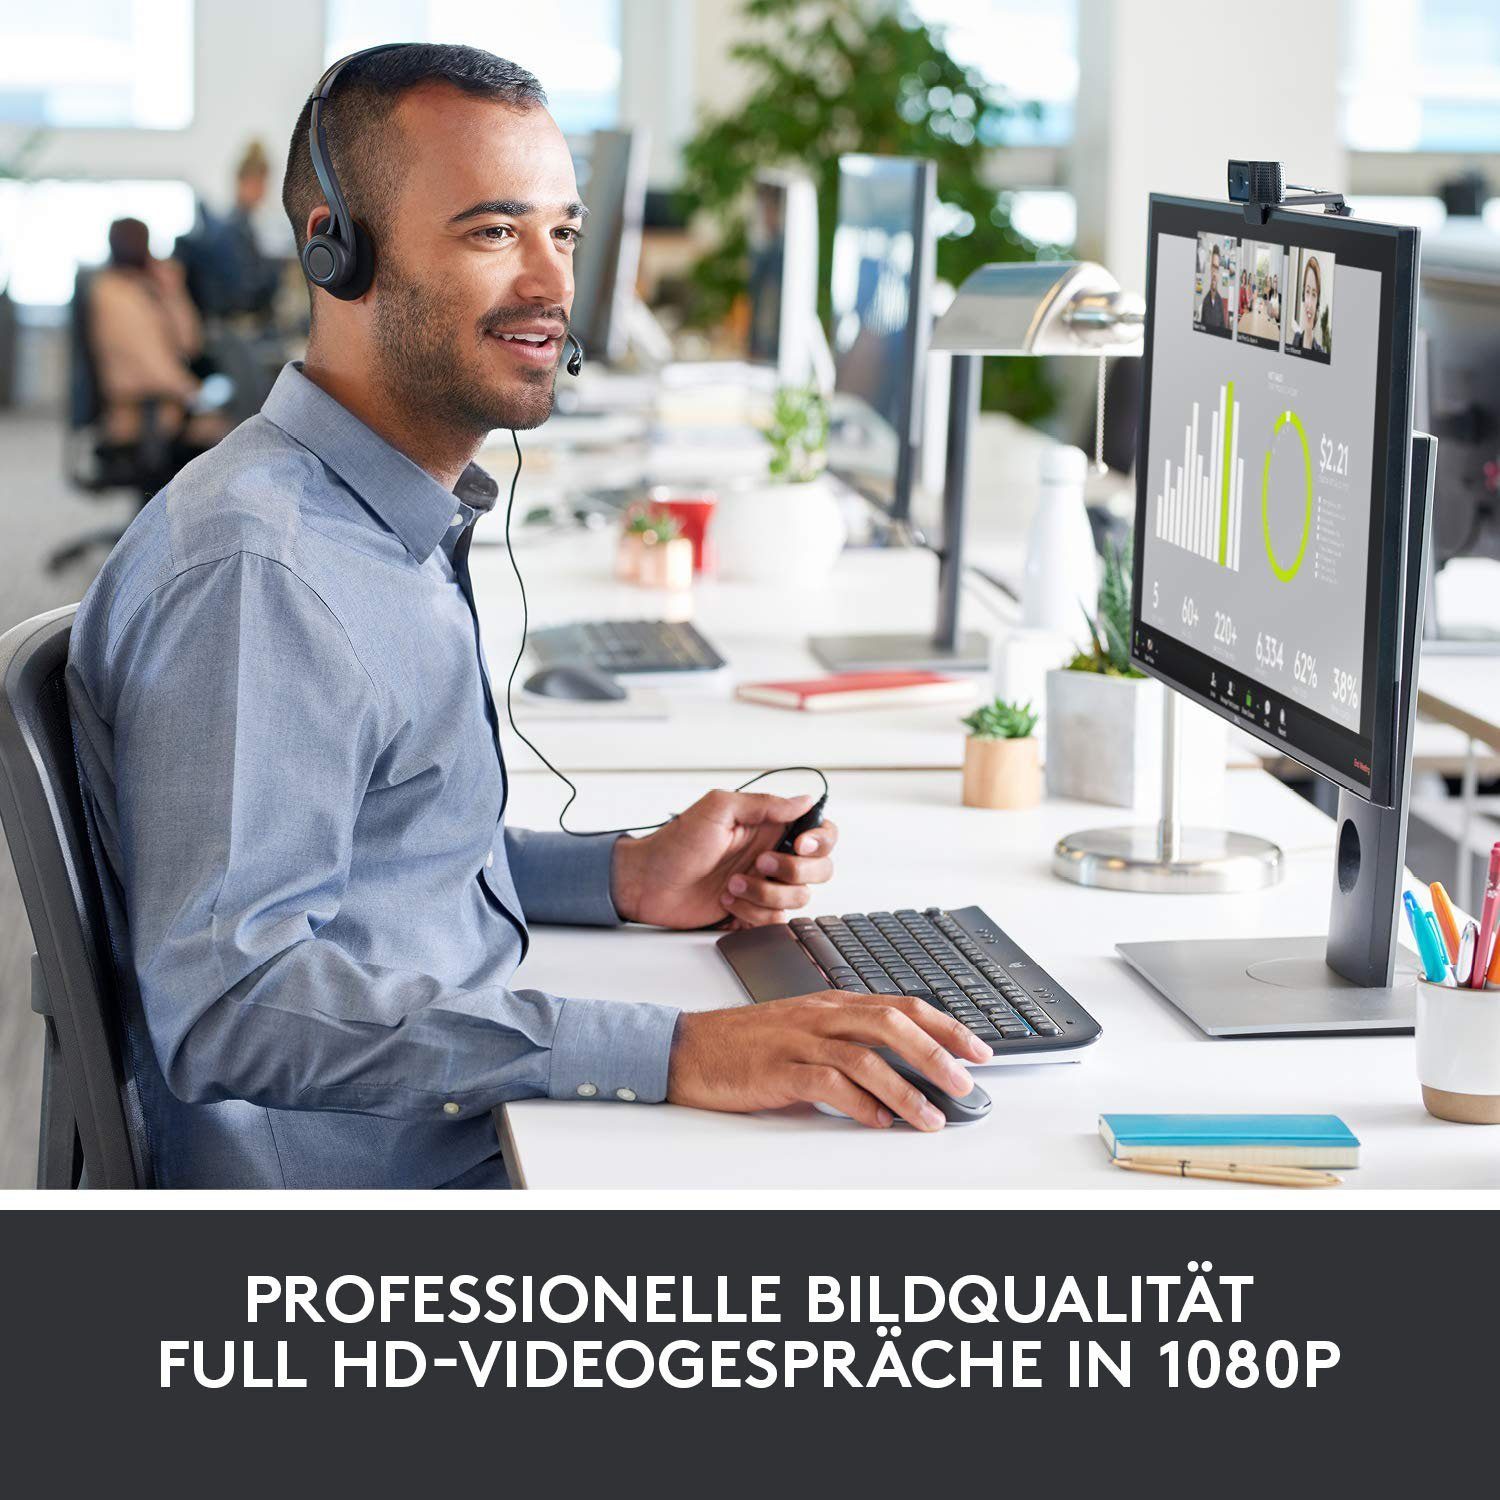 HD) C920 (Full Logitech PRO HD Webcam